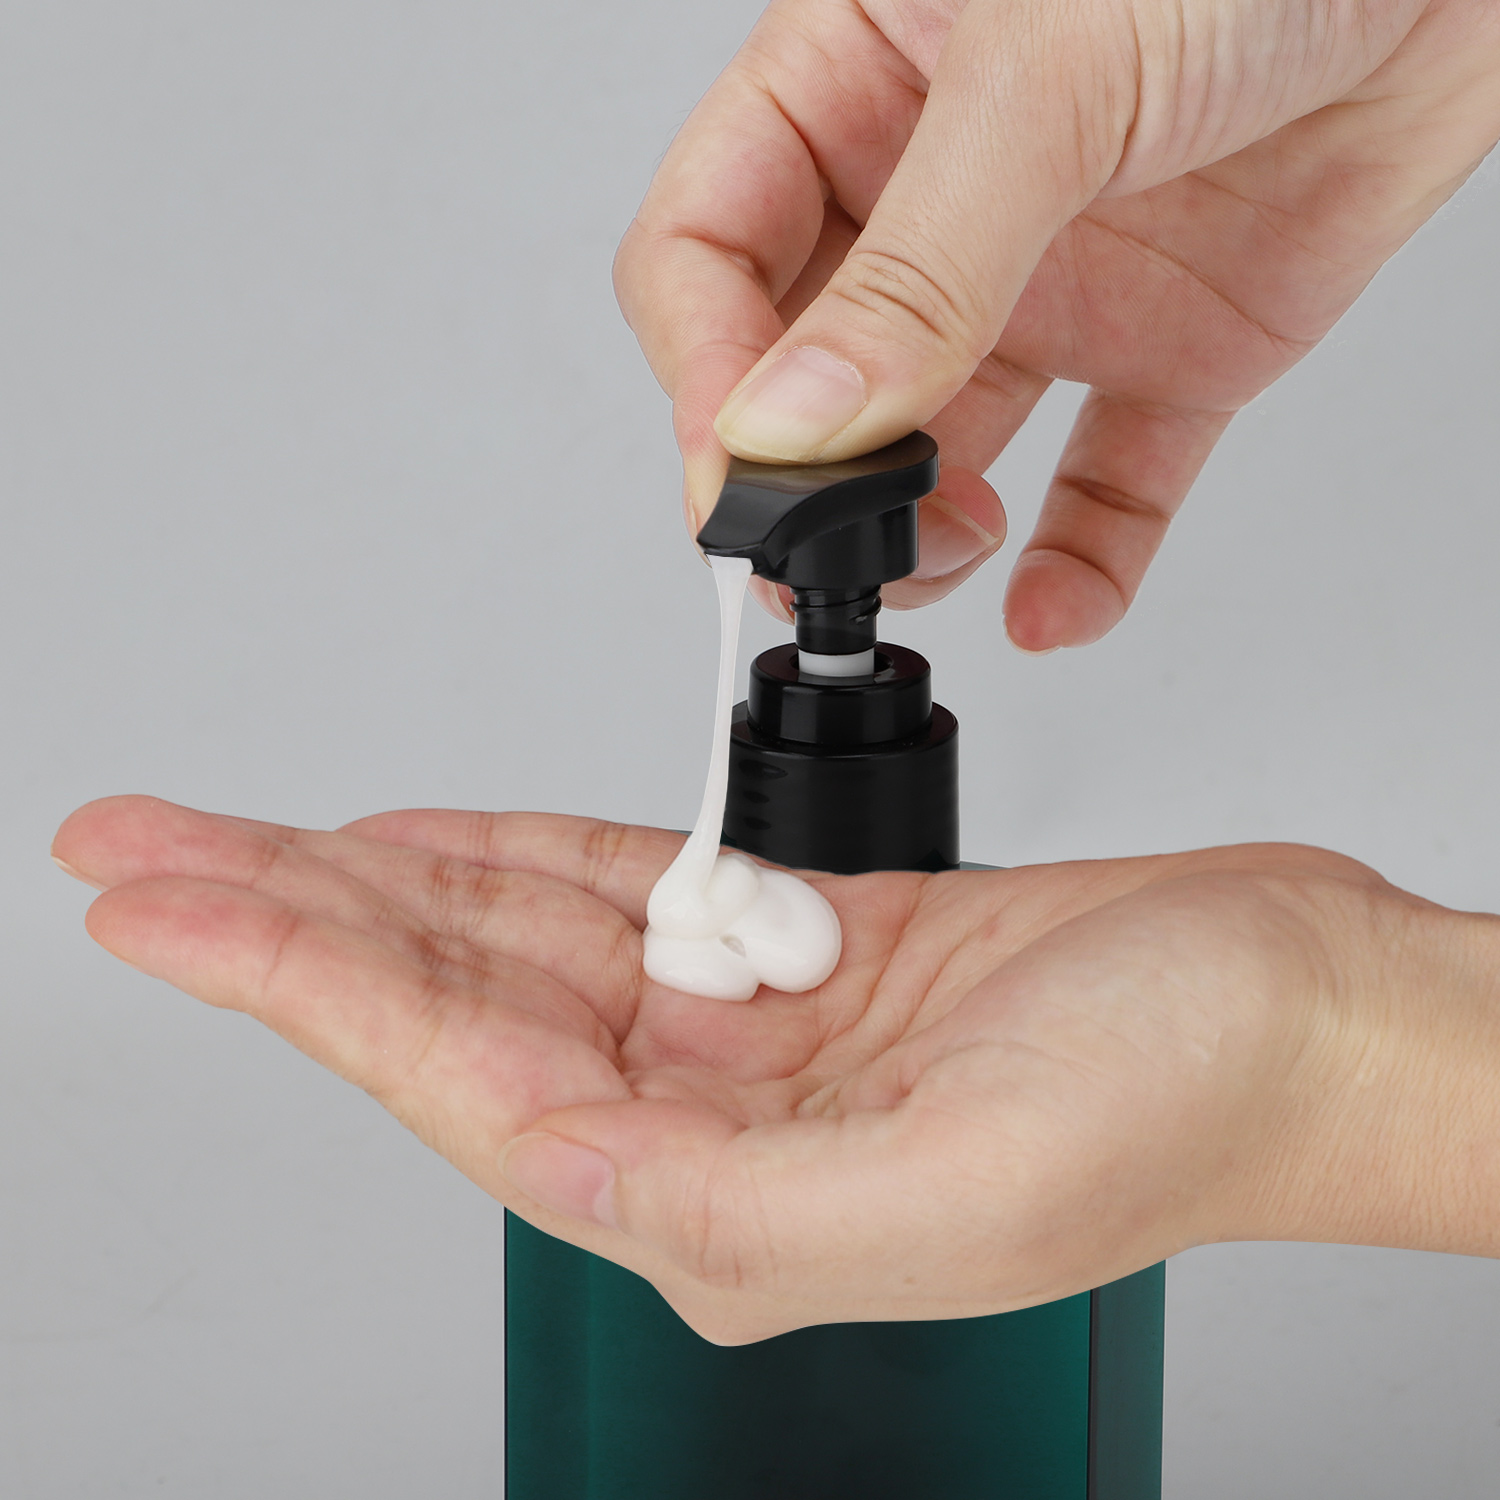 200ml Refillable Shampoo Dispenser Bottle Bathroom Soap Bottle